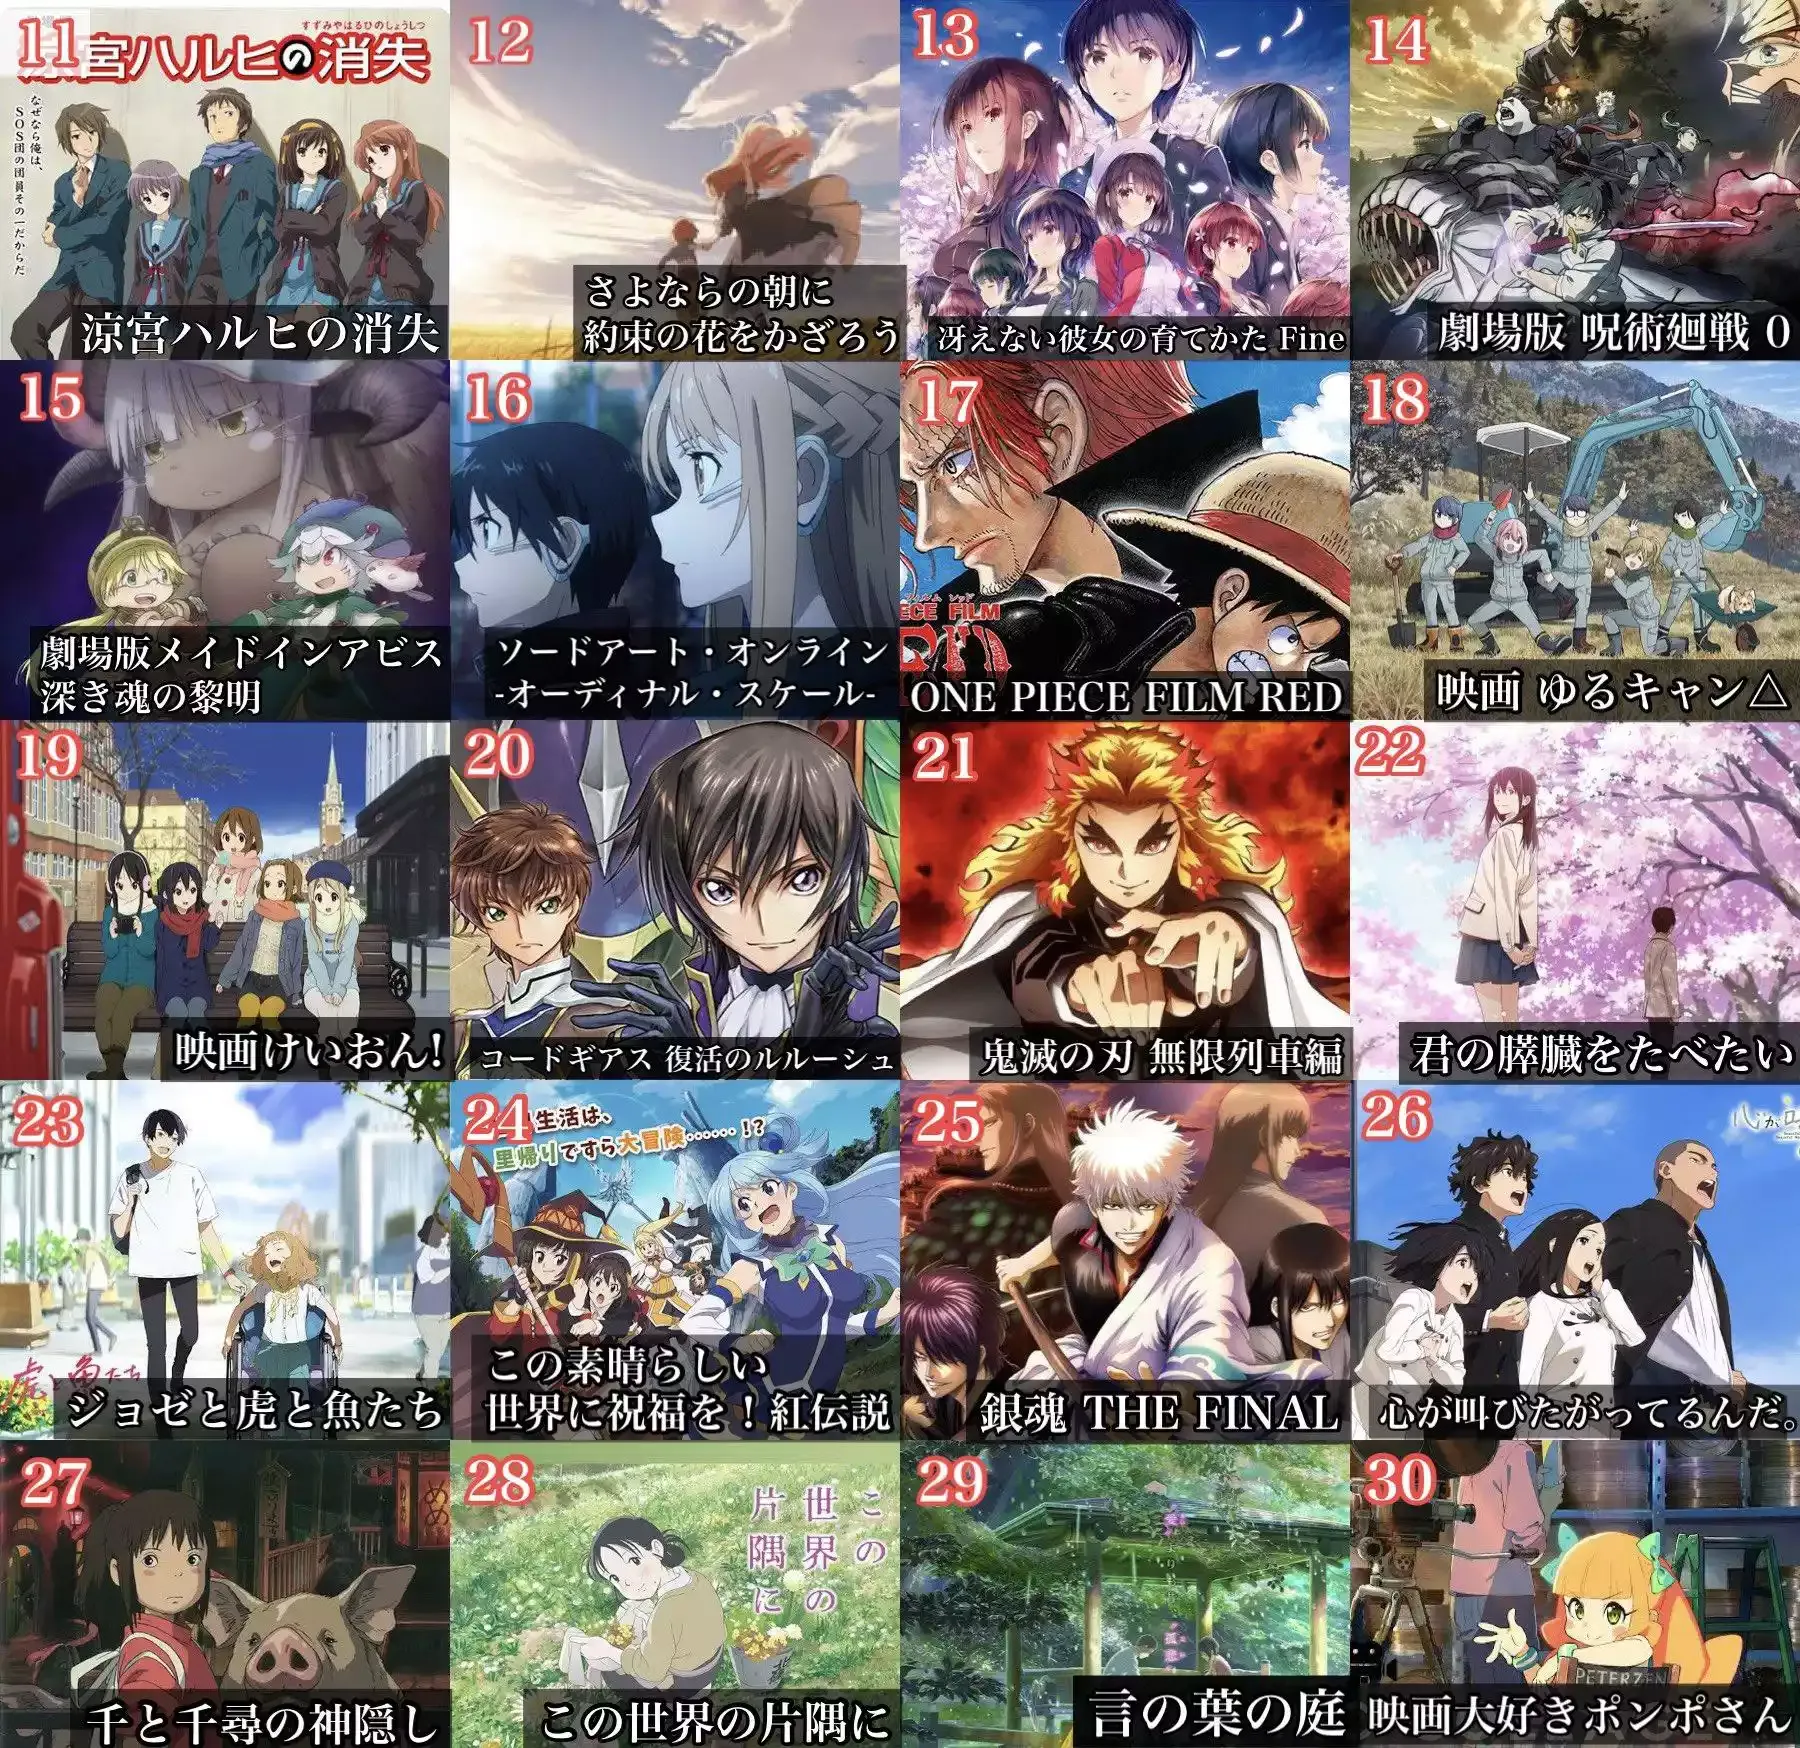 Estes são os Melhores Filmes de Anime Segundo os Japoneses